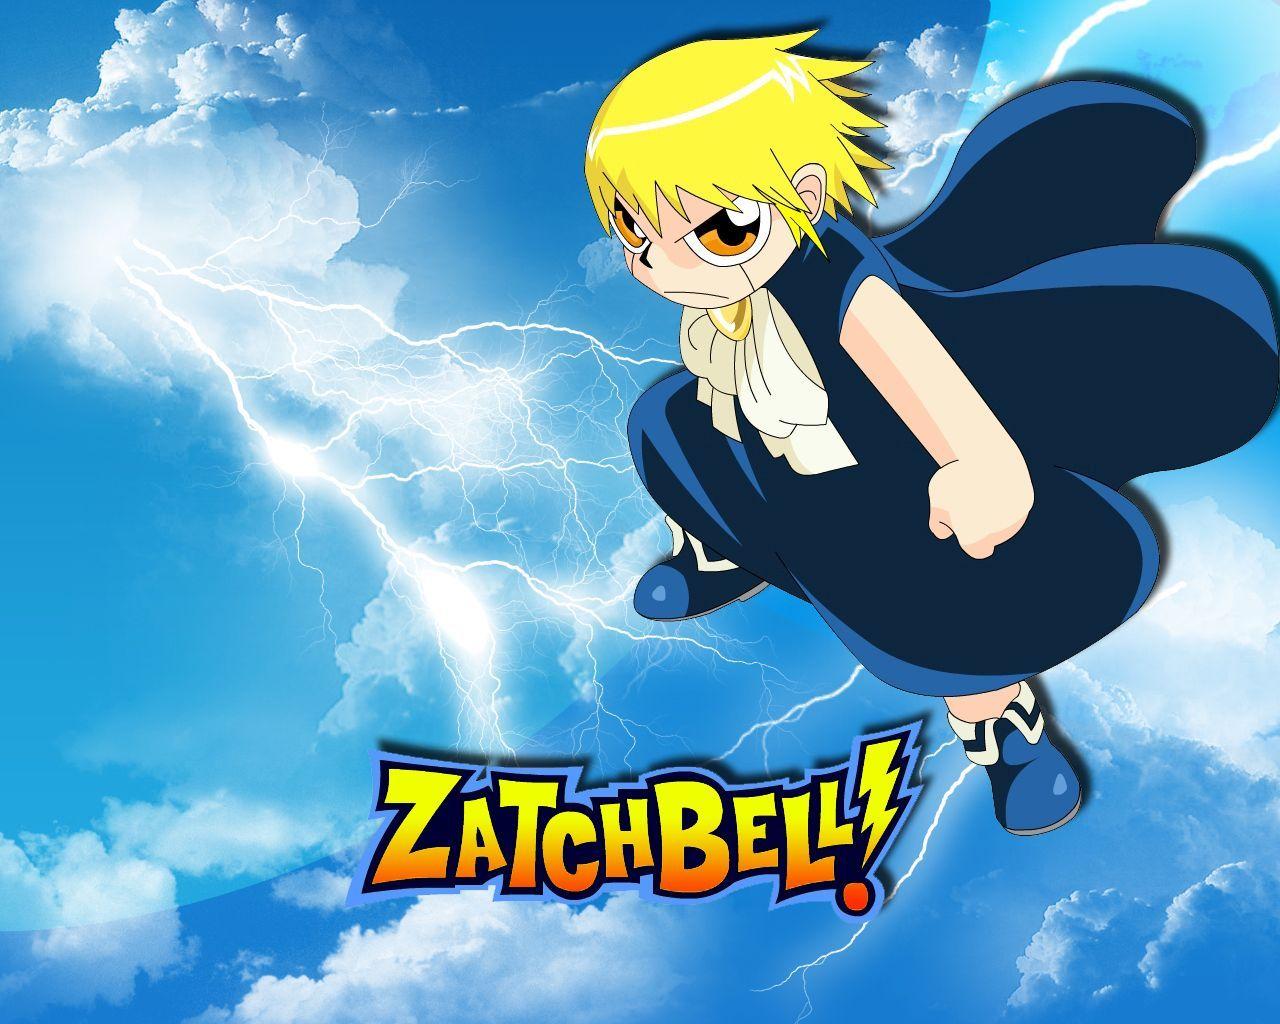 Zatch Bell HD Wallpaper Download For Desktop. Cartoon Wallpaper